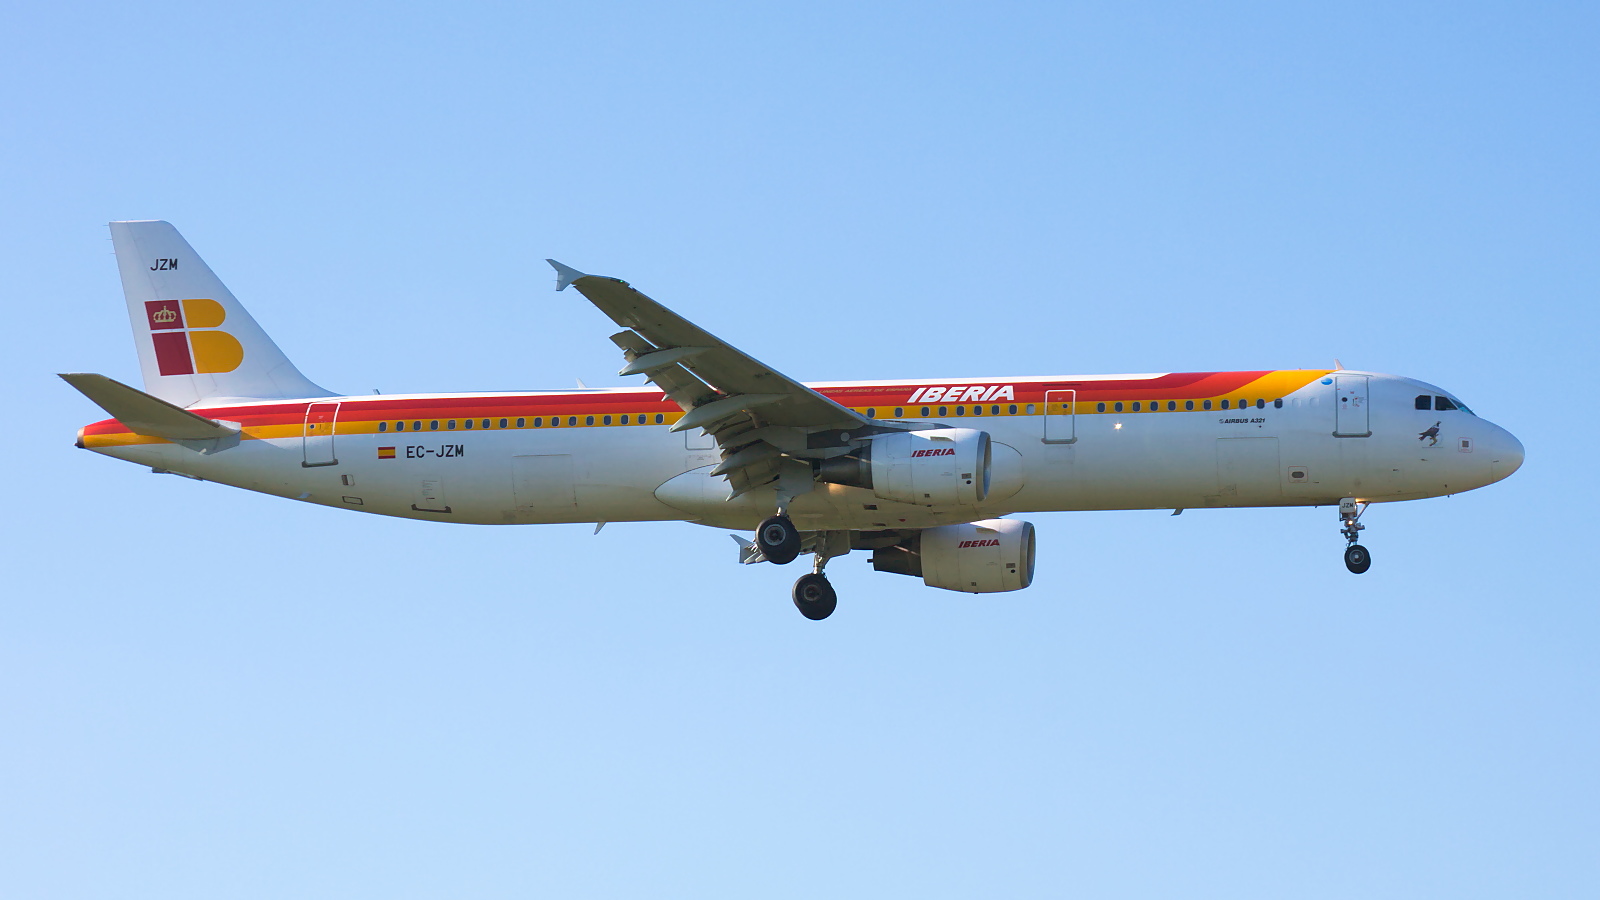 EC-JZM ✈ Iberia Airlines Airbus A321-212 @ London-Heathrow